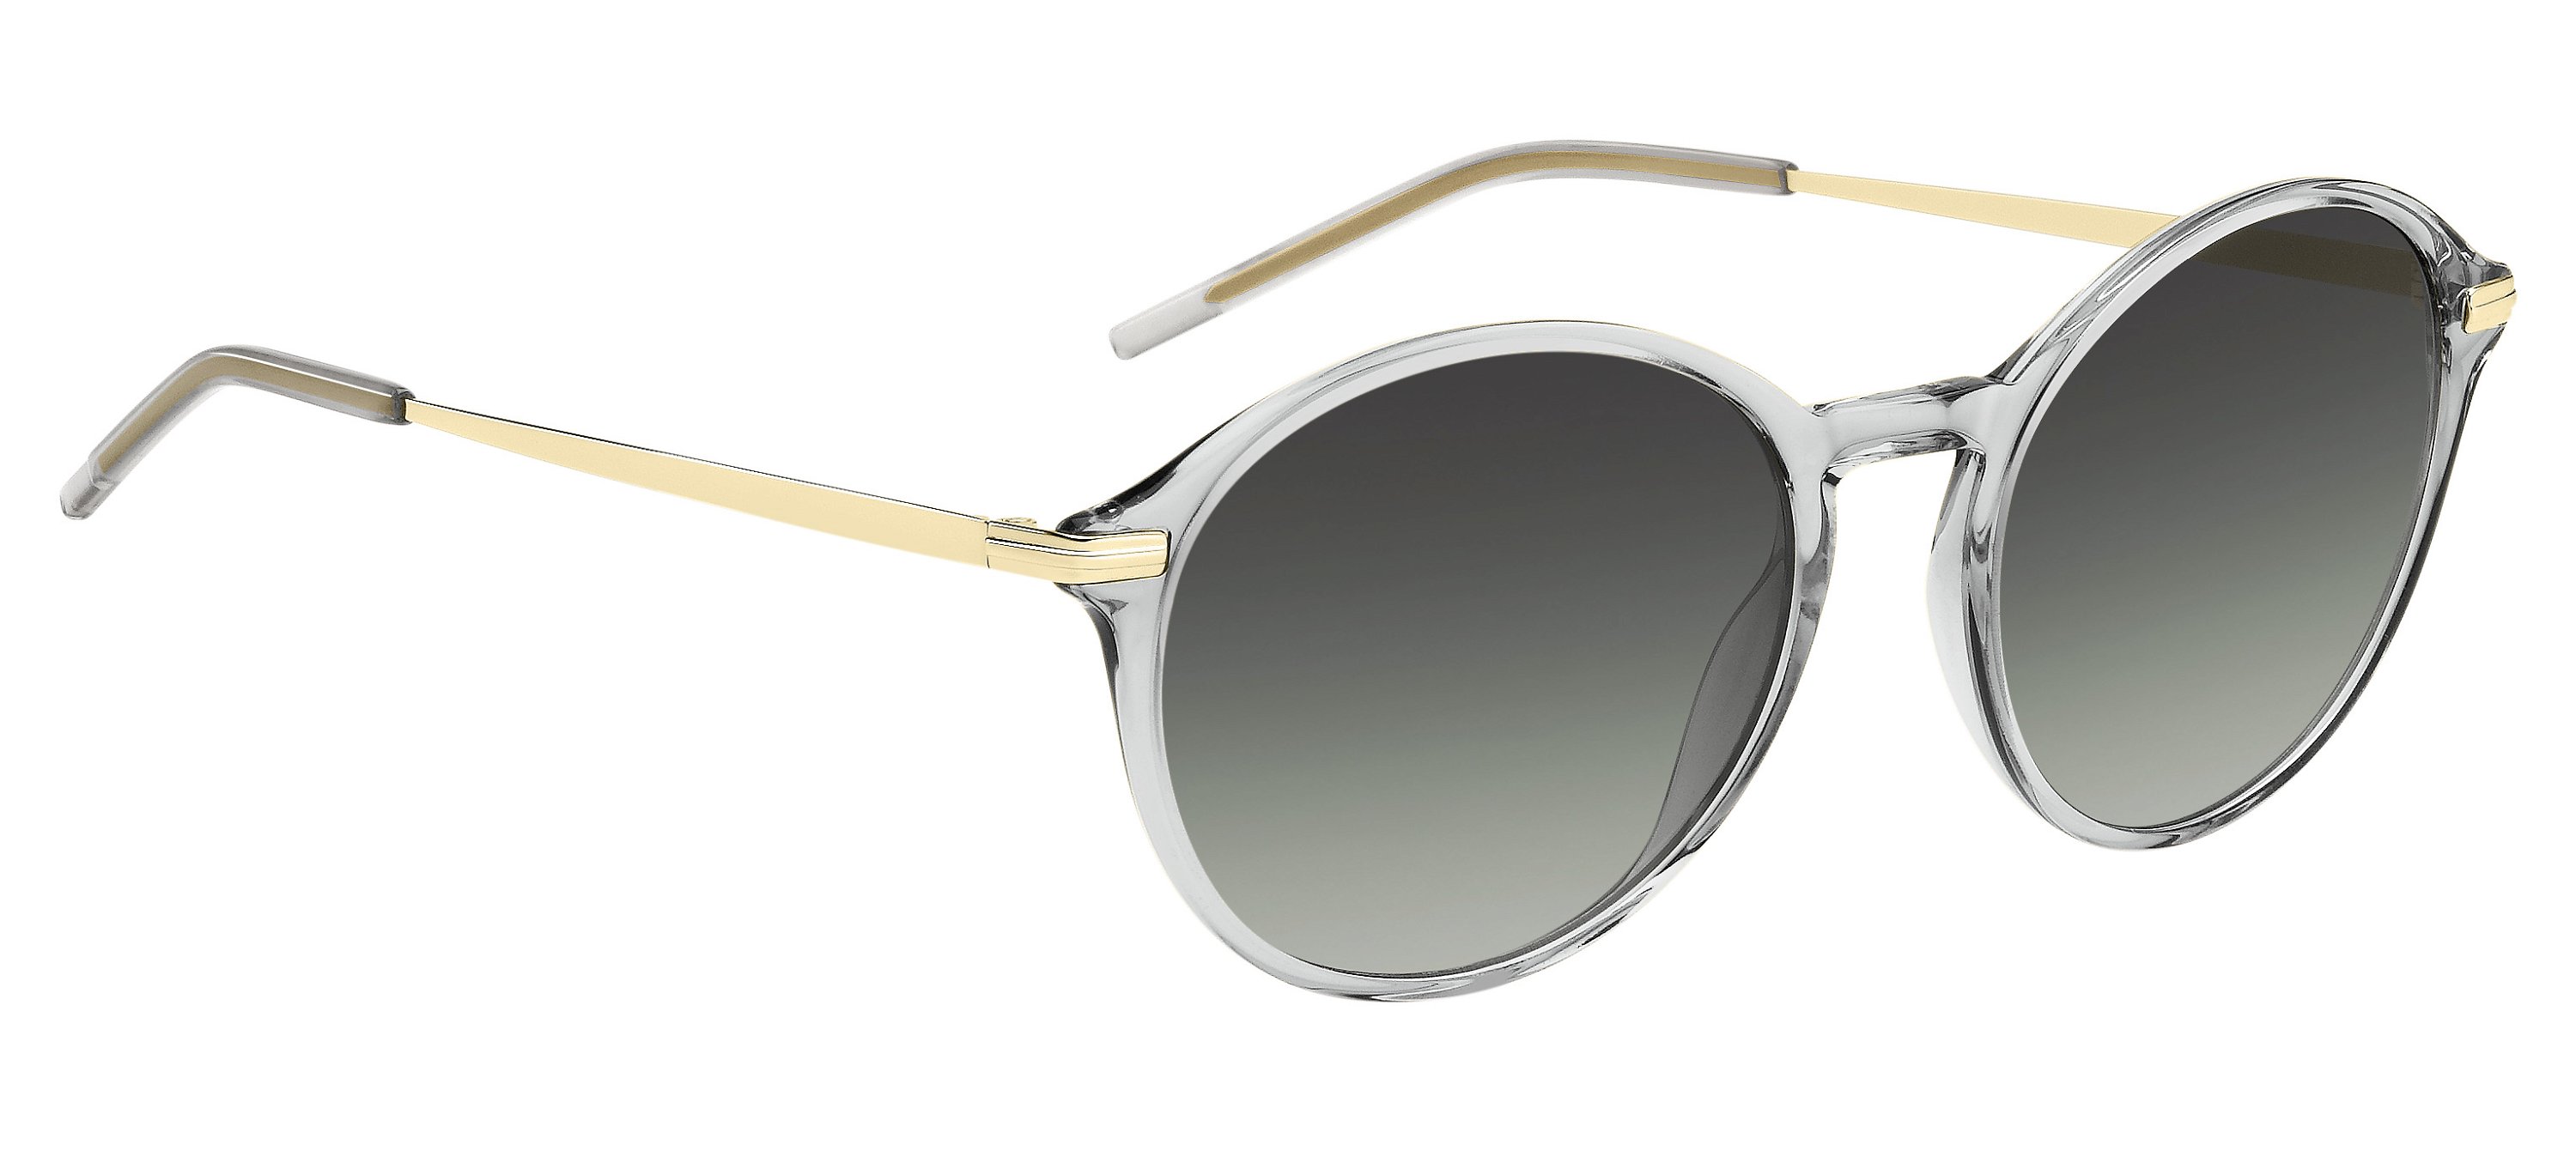 Das Bild zeigt die Sonnenbrille BOSS1662S FT3 von der Marke BOSS in Grau/Gold.